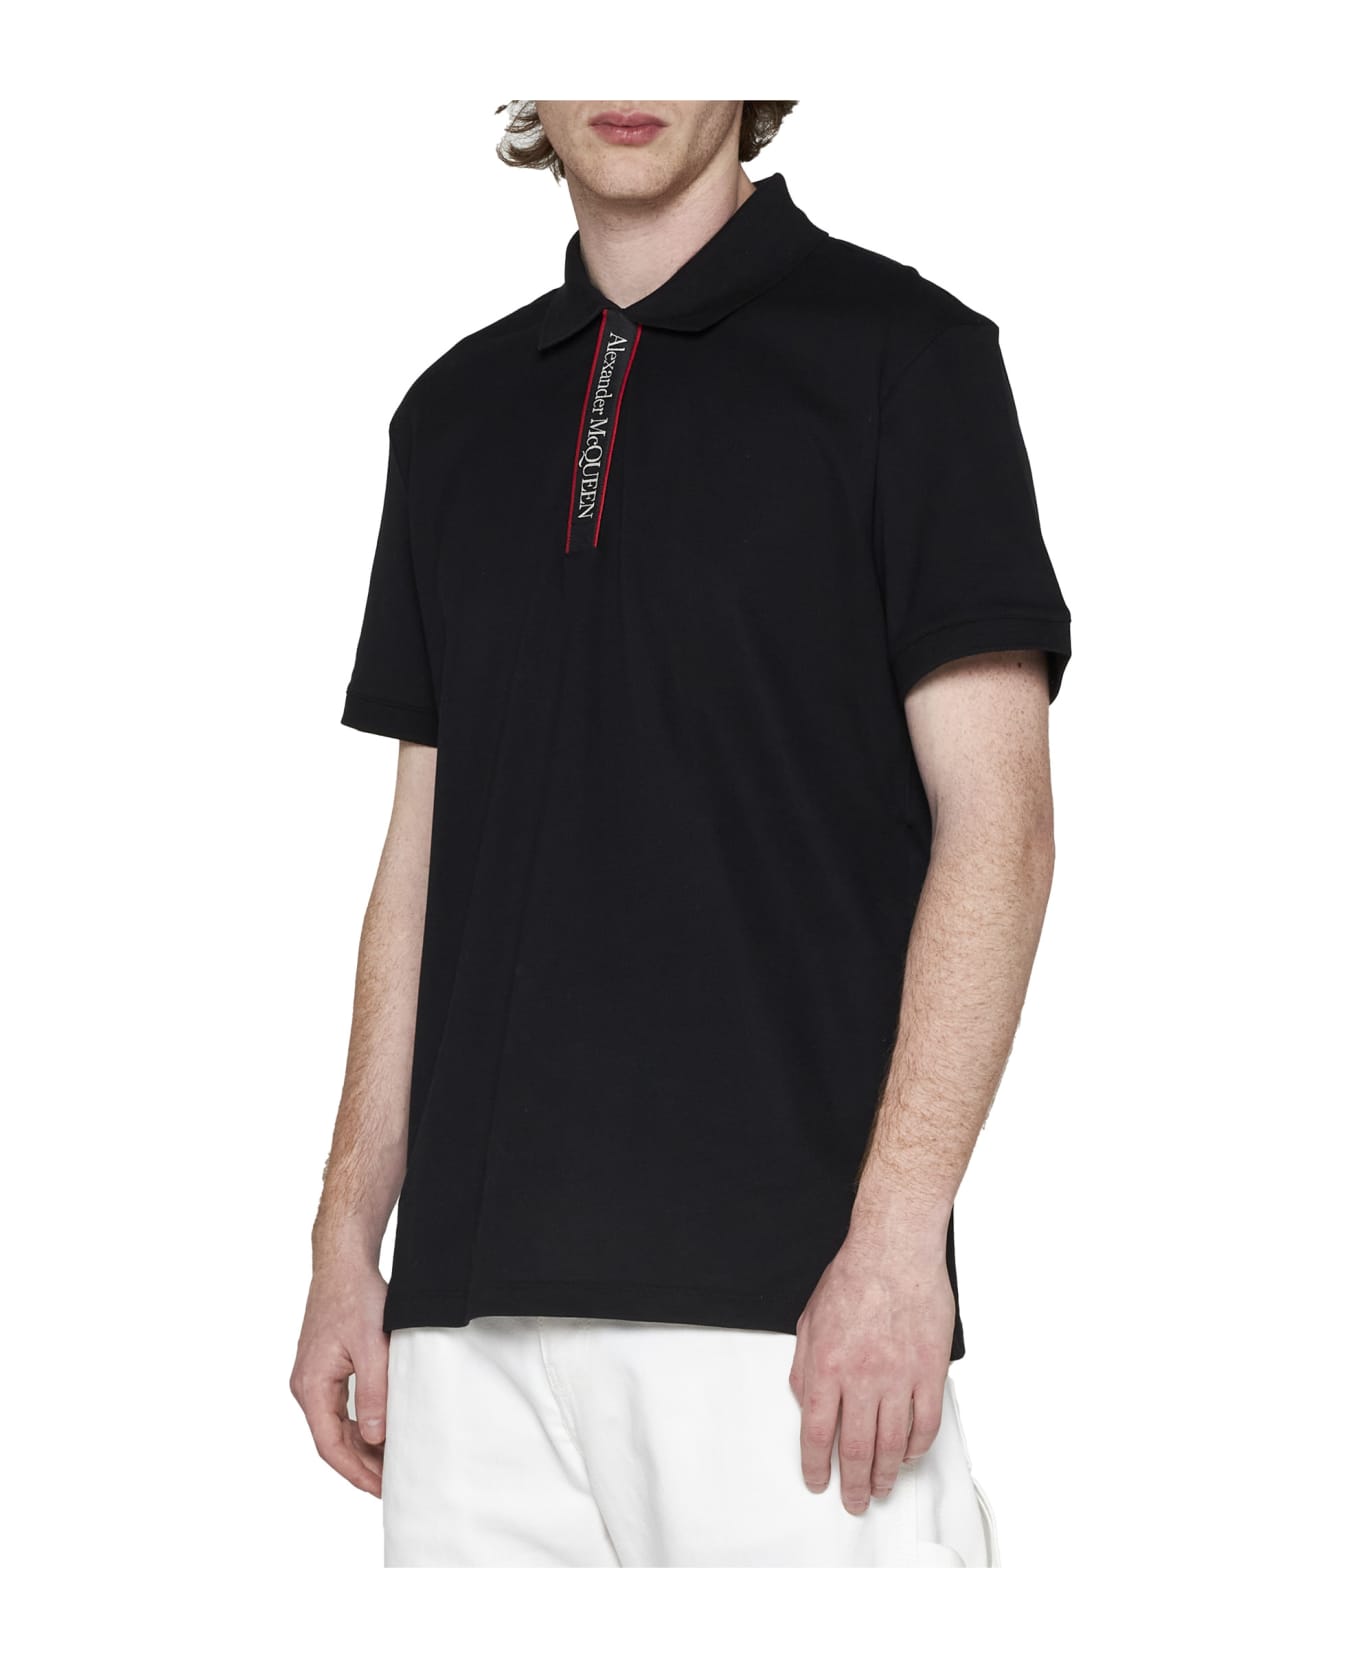 Alexander McQueen Polo Shirt - Black Mix